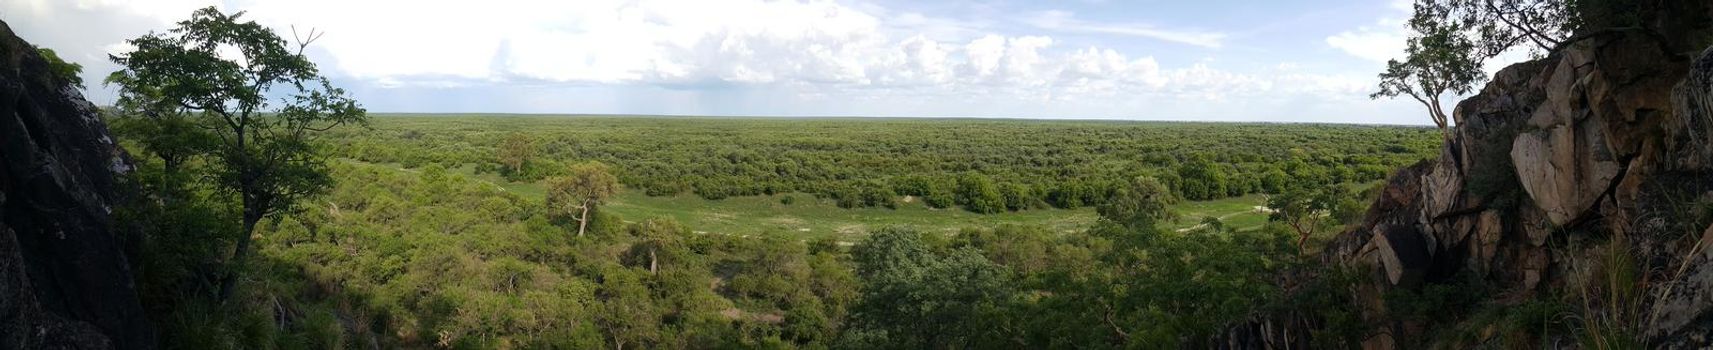 Panorama from Chobe National Park in Botswana